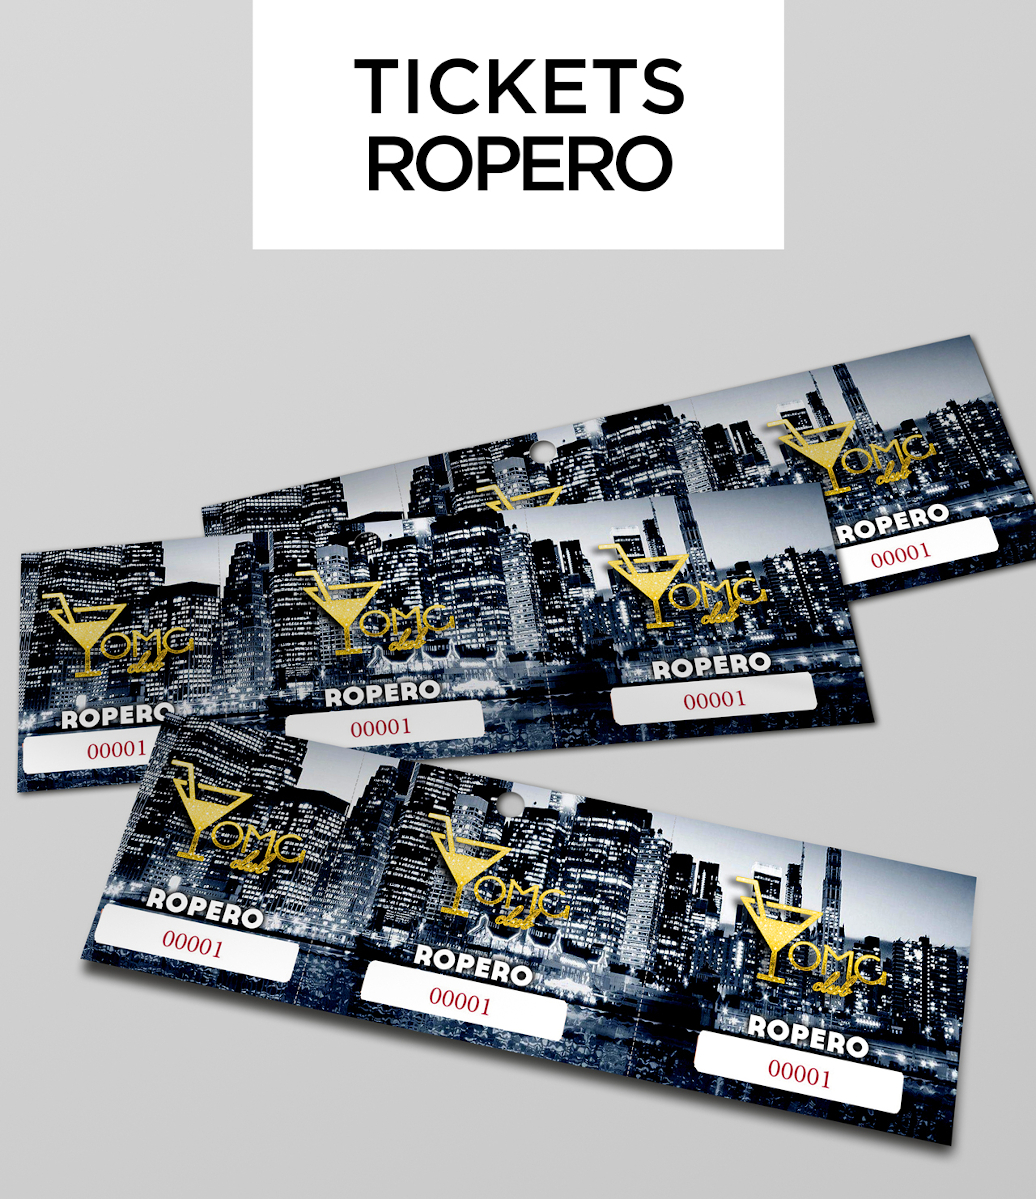 Tickets Ropero